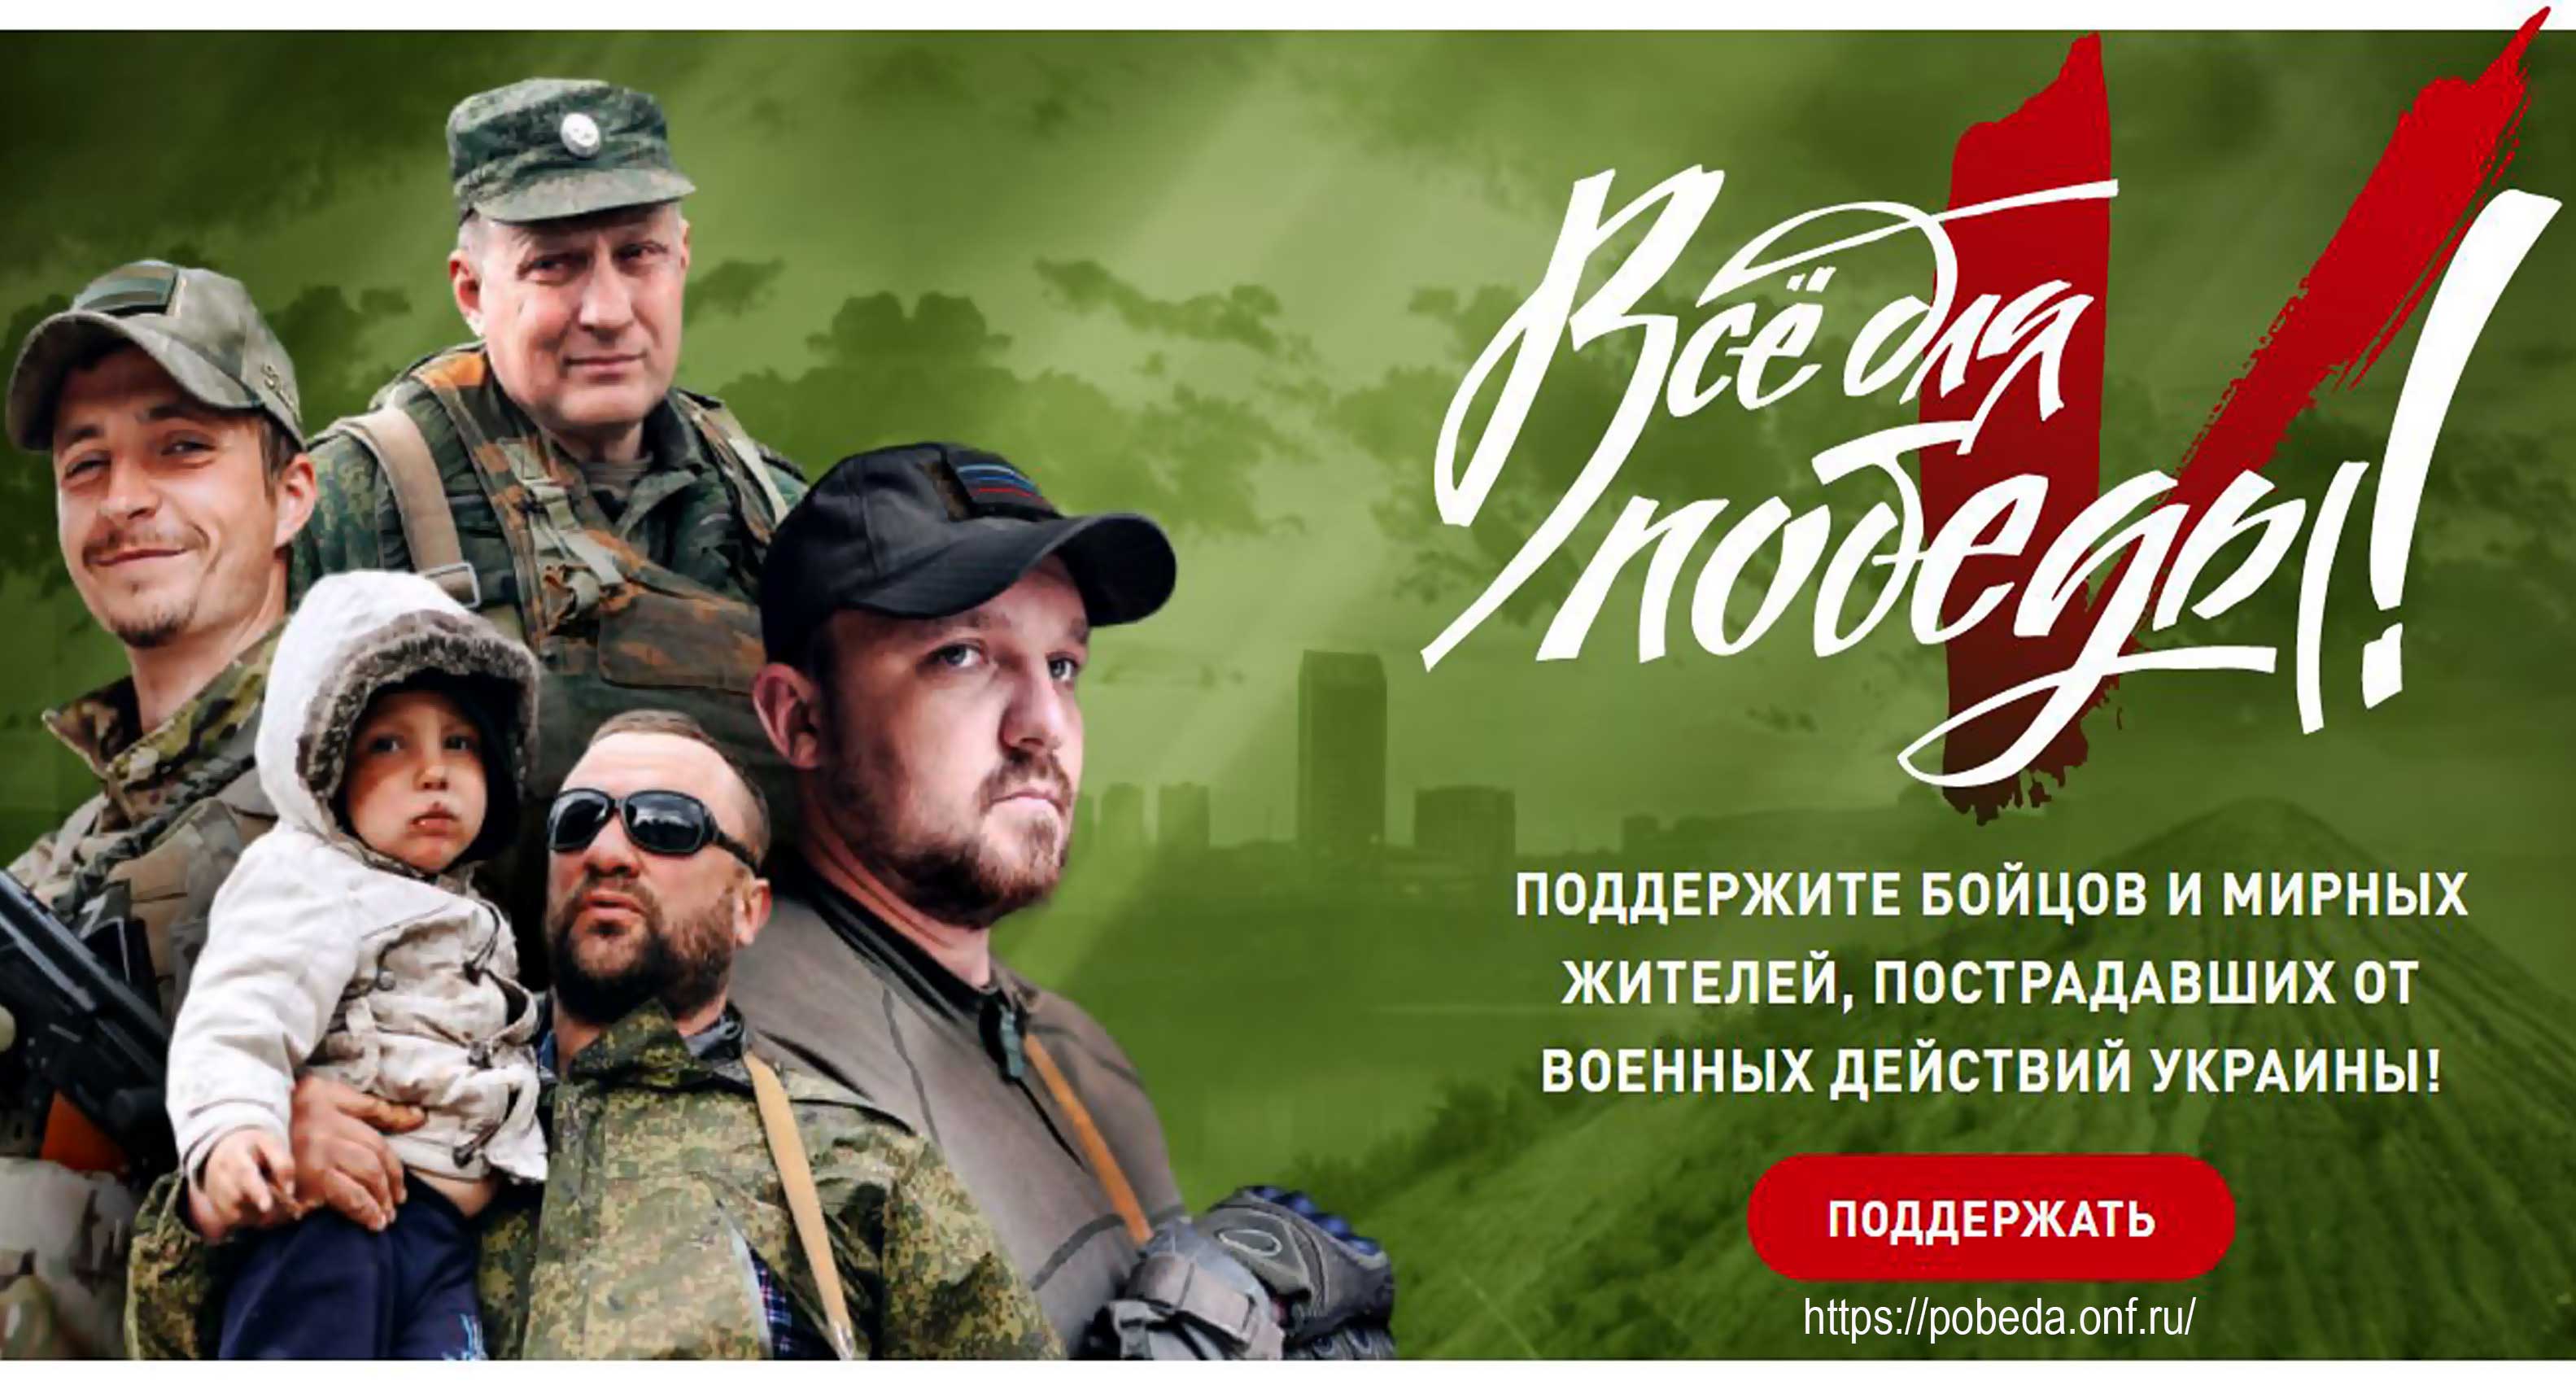 Для поддержки солдат и жителей Донецкой и Луганской